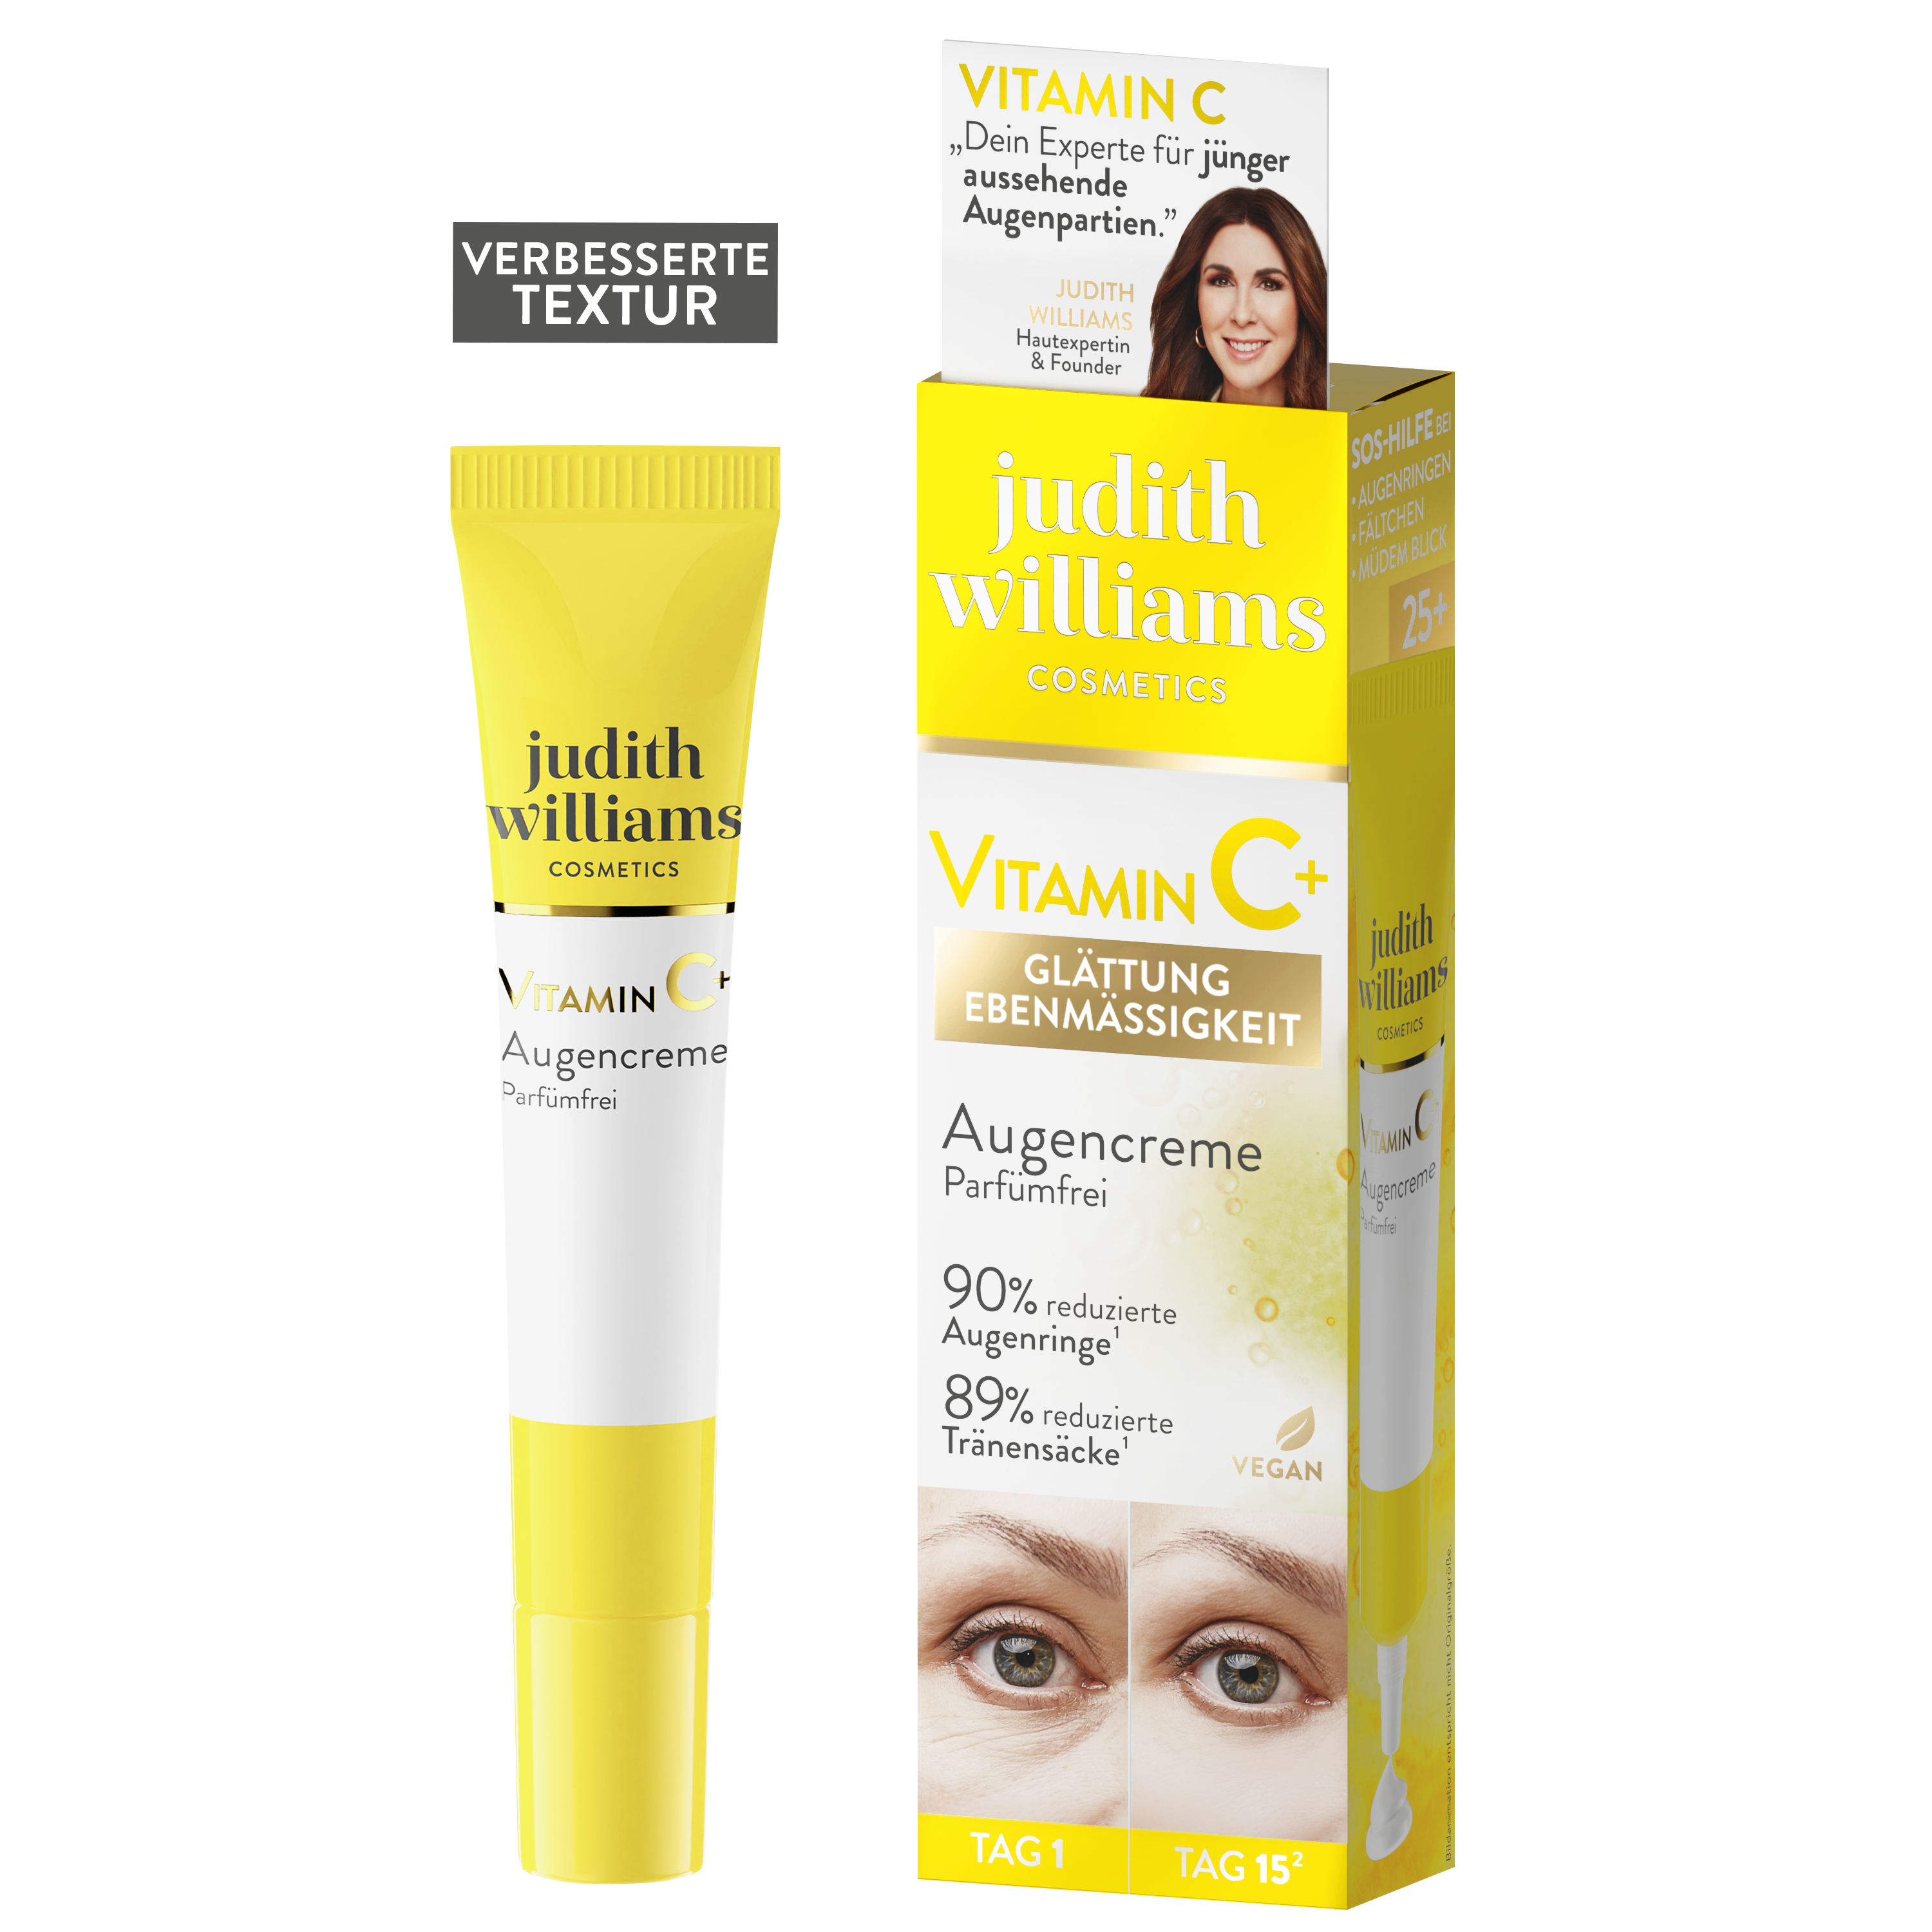 Augencreme | Vitamin C+ | Augencreme | Judith Williams